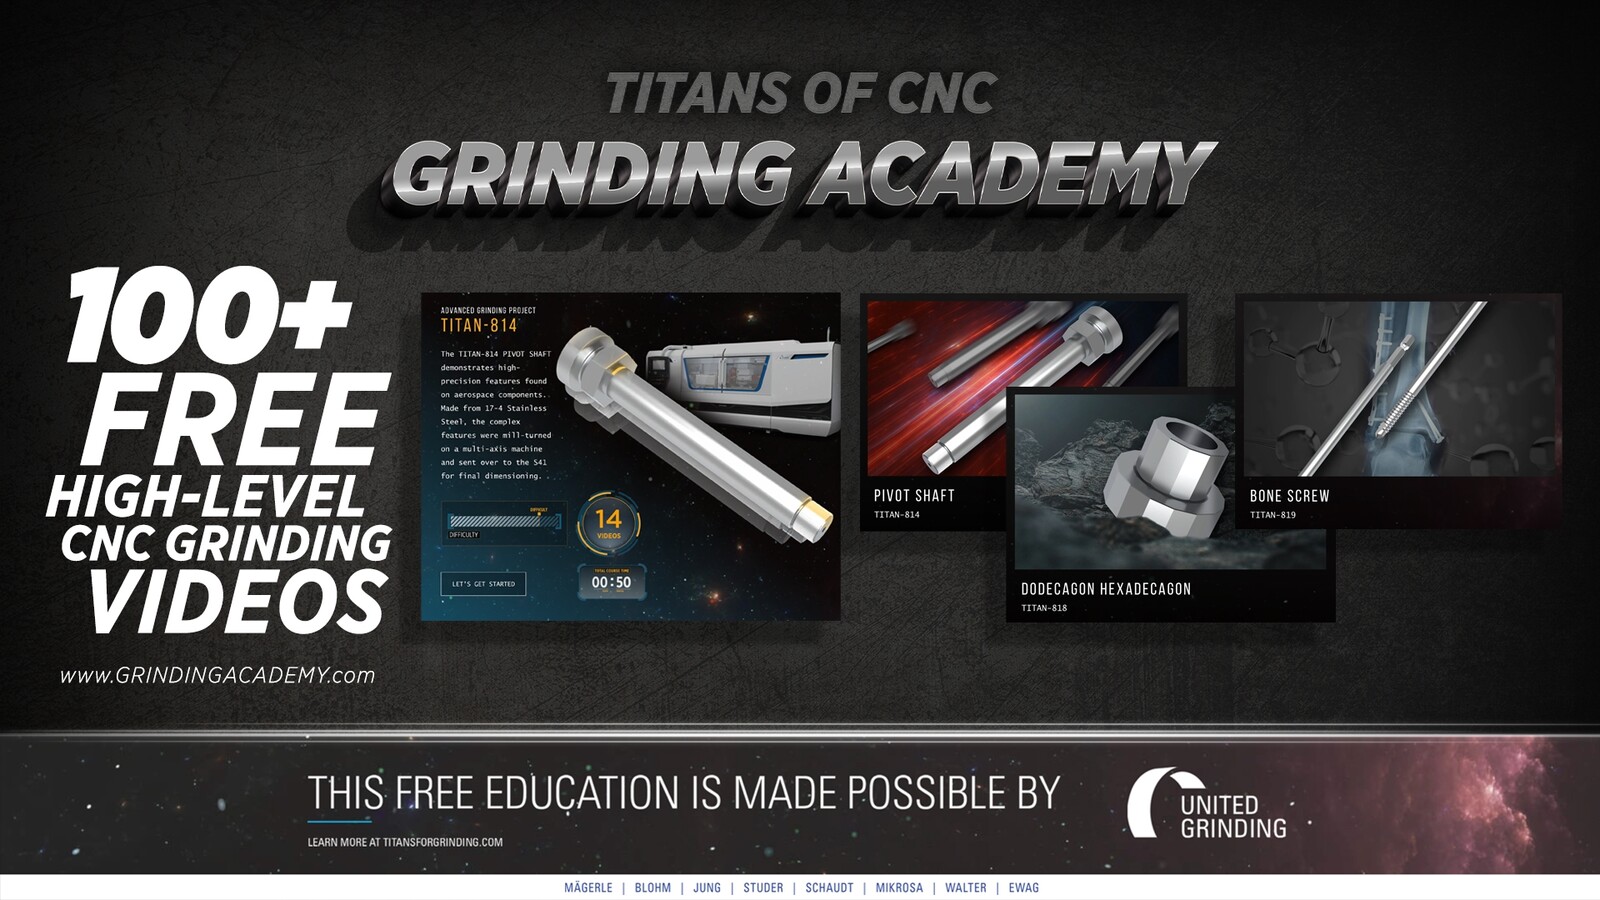 Ähnlich wie die bestehenden CNC Academy und die Aerospace Academy von Titans of CNC wird die Grinding Academy kostenlose Online-Kurse anbieten, in denen die nächste Generation von Zerspanungsmechanikern unterrichtet und ausgebildet wird. 